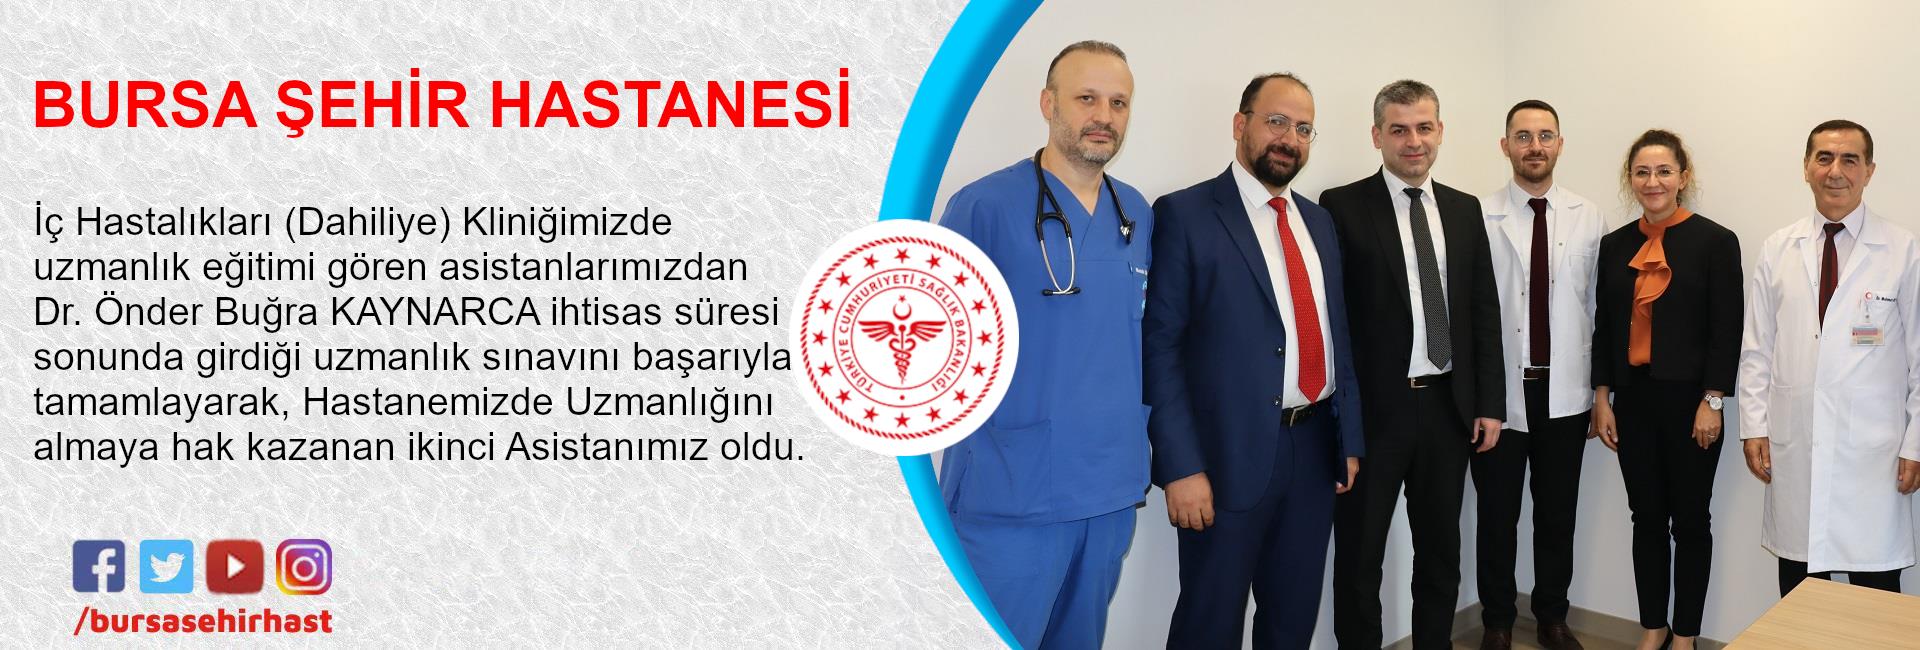 Dr. Önder Buğra KAYNARCA ihtisas süresi sonunda girdiği uzmanlık sınavını başarıyla tamamlayarak, İç Hastalıkları (Dahiliye) Uzmanlığını almaya hak kazanmıştır.